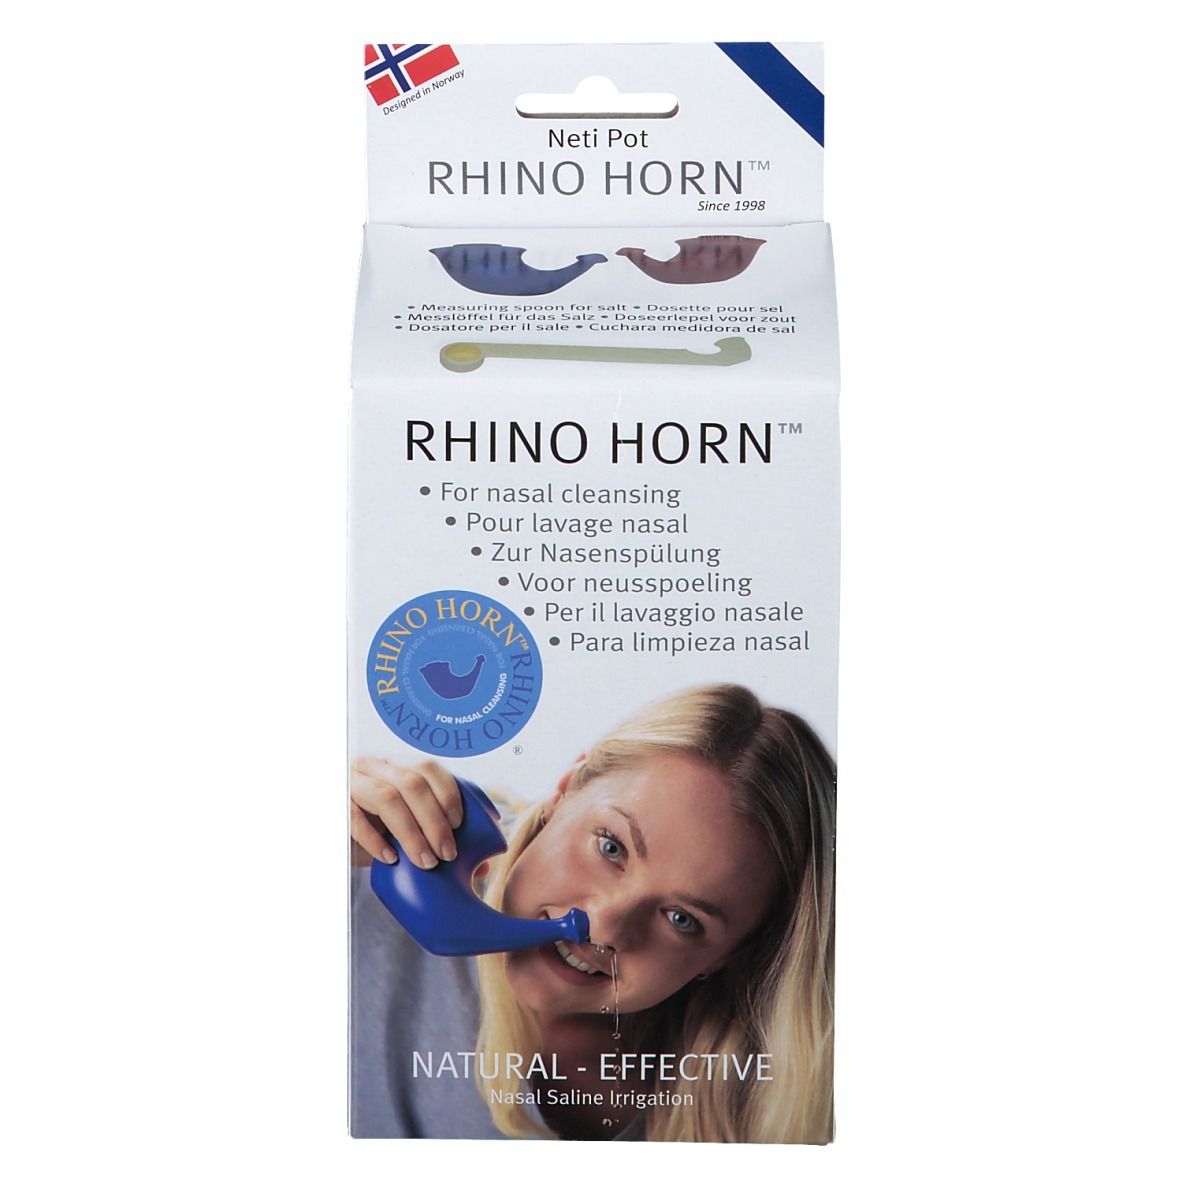 Rhino Horn France SAS - Vente et location de matériel médico-chirurgical,  Chemin de Boisse, 24100 Bergerac (France) - Adresse, Horaire